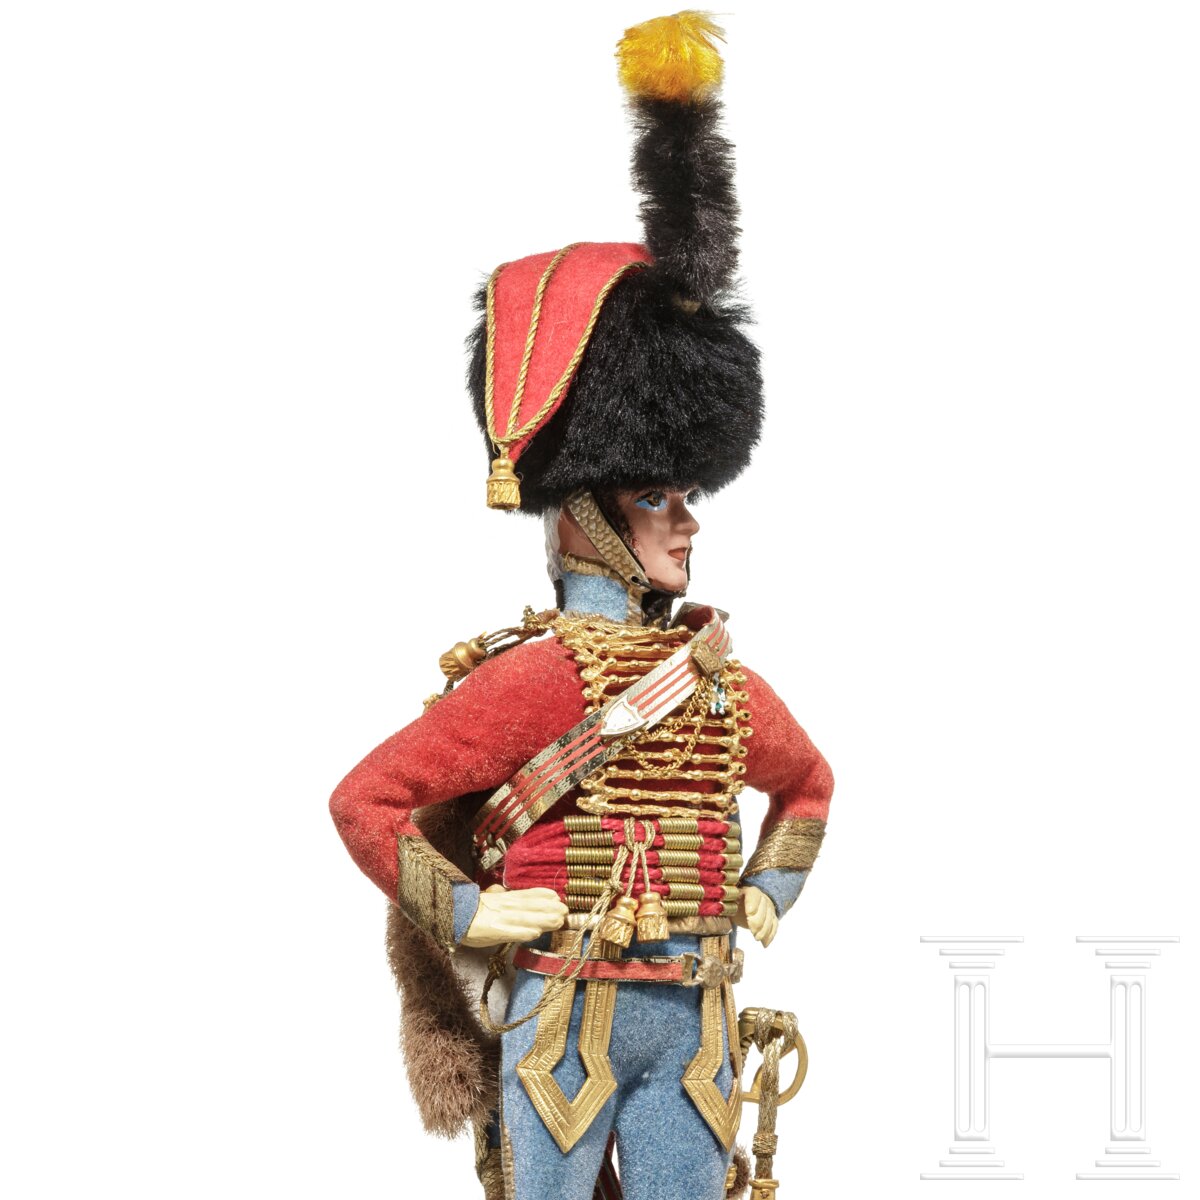 Offizier der Husaren um 1810 - Uniformfigur von Marcel Riffet, 20. Jhdt. - Image 7 of 7